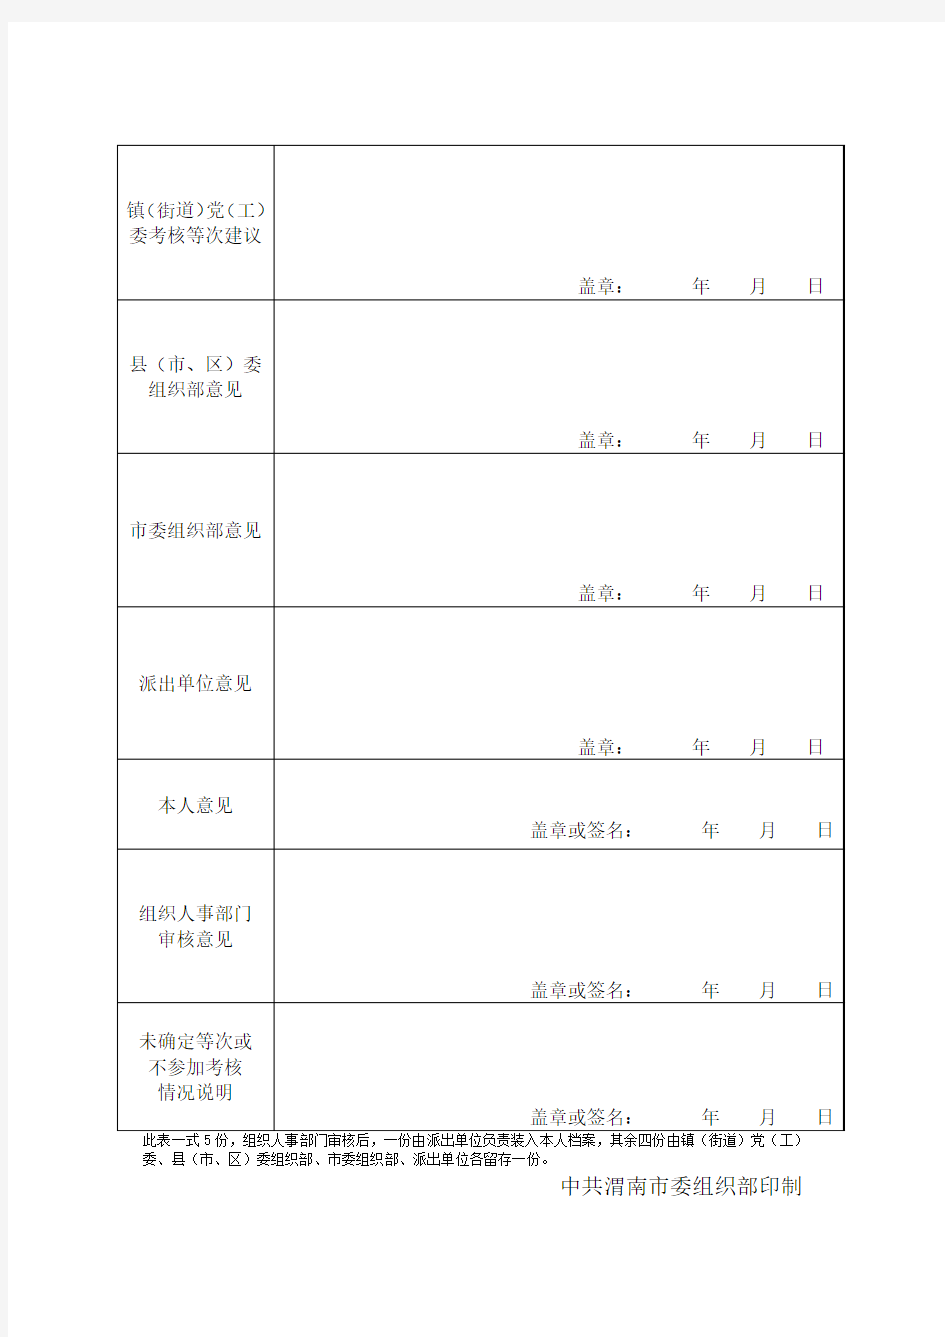 2016年第一书记年度考核登记表(样表)